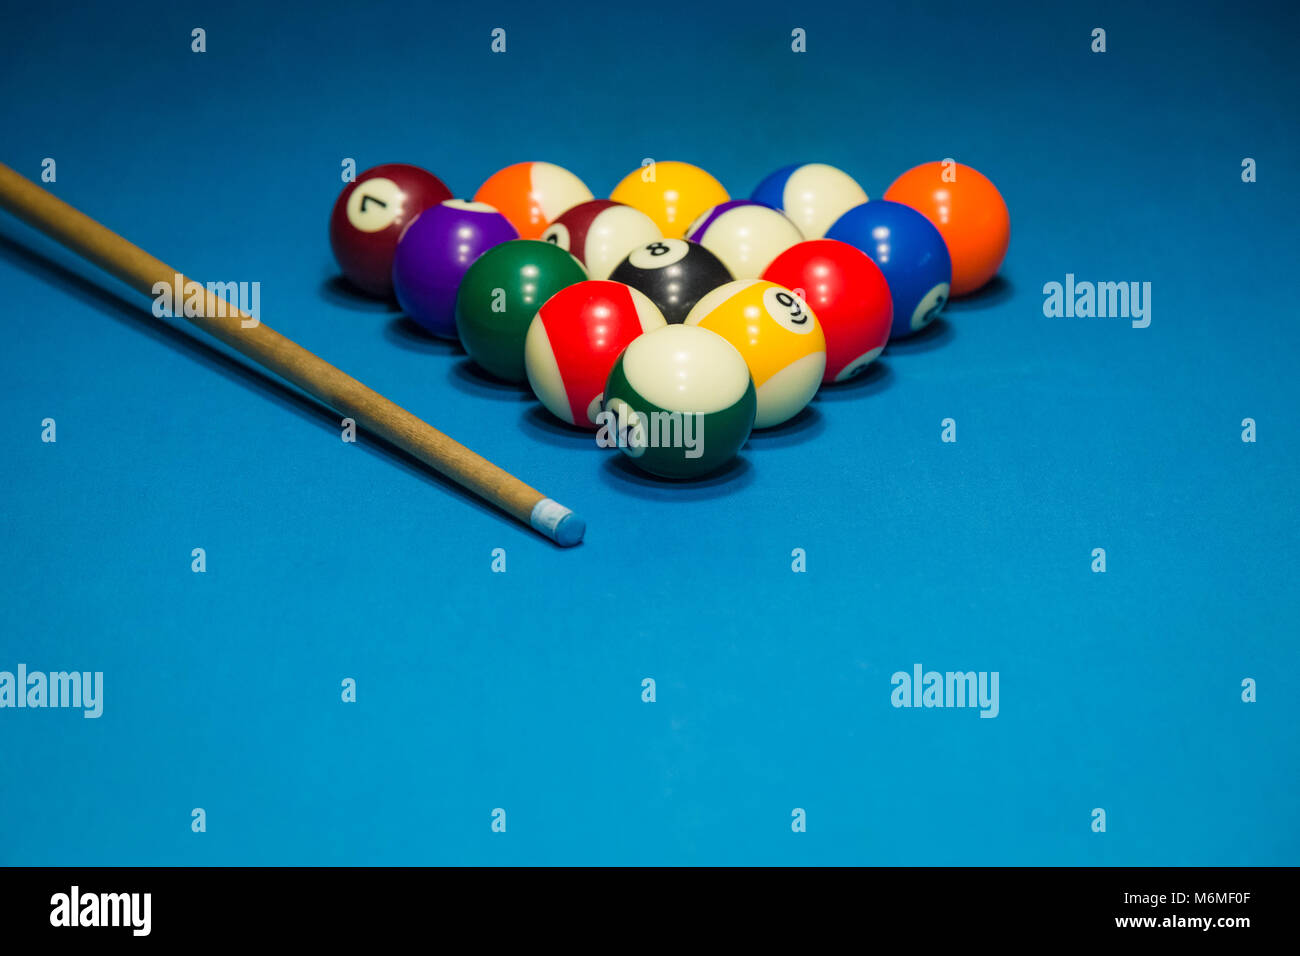 Bolas Billiard Multicoloridas Sobre Bolas Coloridas De Mesa Azuis Em Uma  Mesa Billiard Jogar Snooket Foto de Stock - Imagem de multicolorido,  vermelho: 266214158